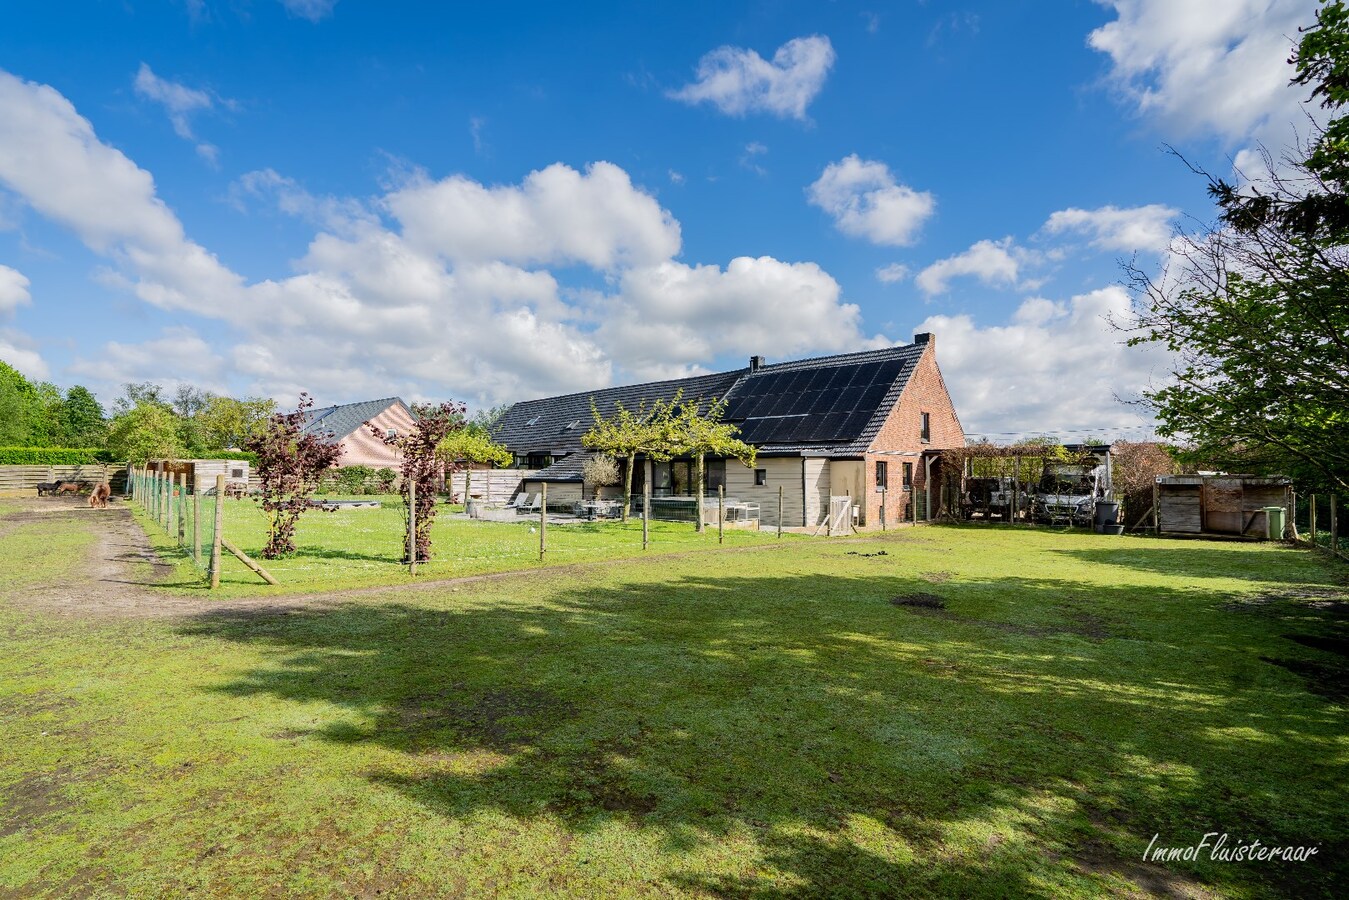 Property for sale in Heist-op-den-Berg